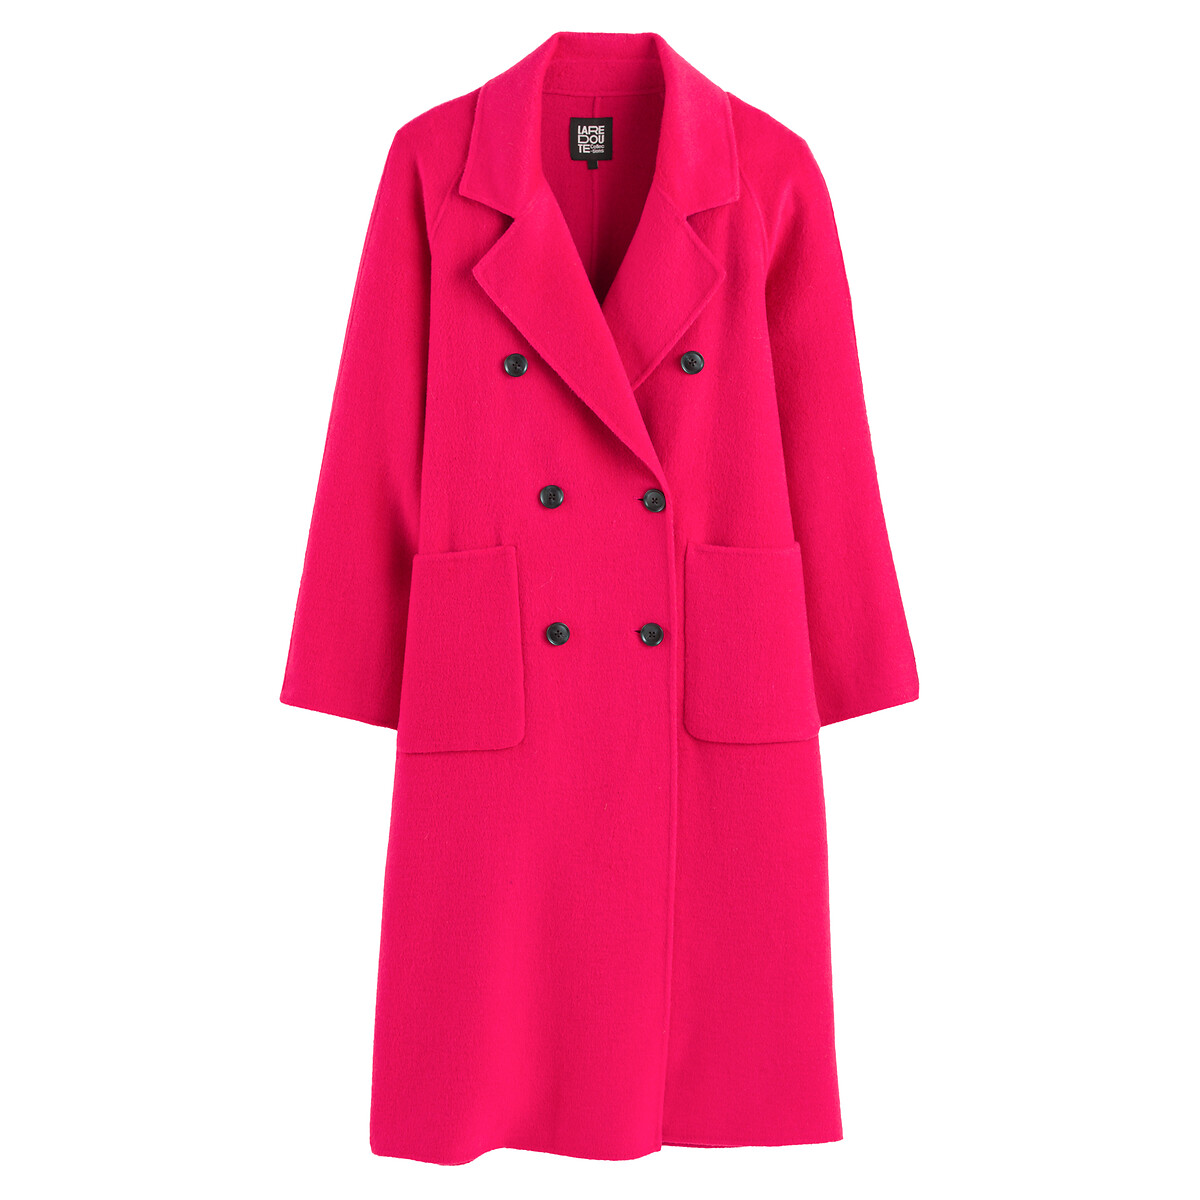 Пальто Из шерстяного драпа 34 (FR) - 40 (RUS) розовый LaRedoute, размер 34 (FR) - 40 (RUS) Пальто Из шерстяного драпа 34 (FR) - 40 (RUS) розовый - фото 5